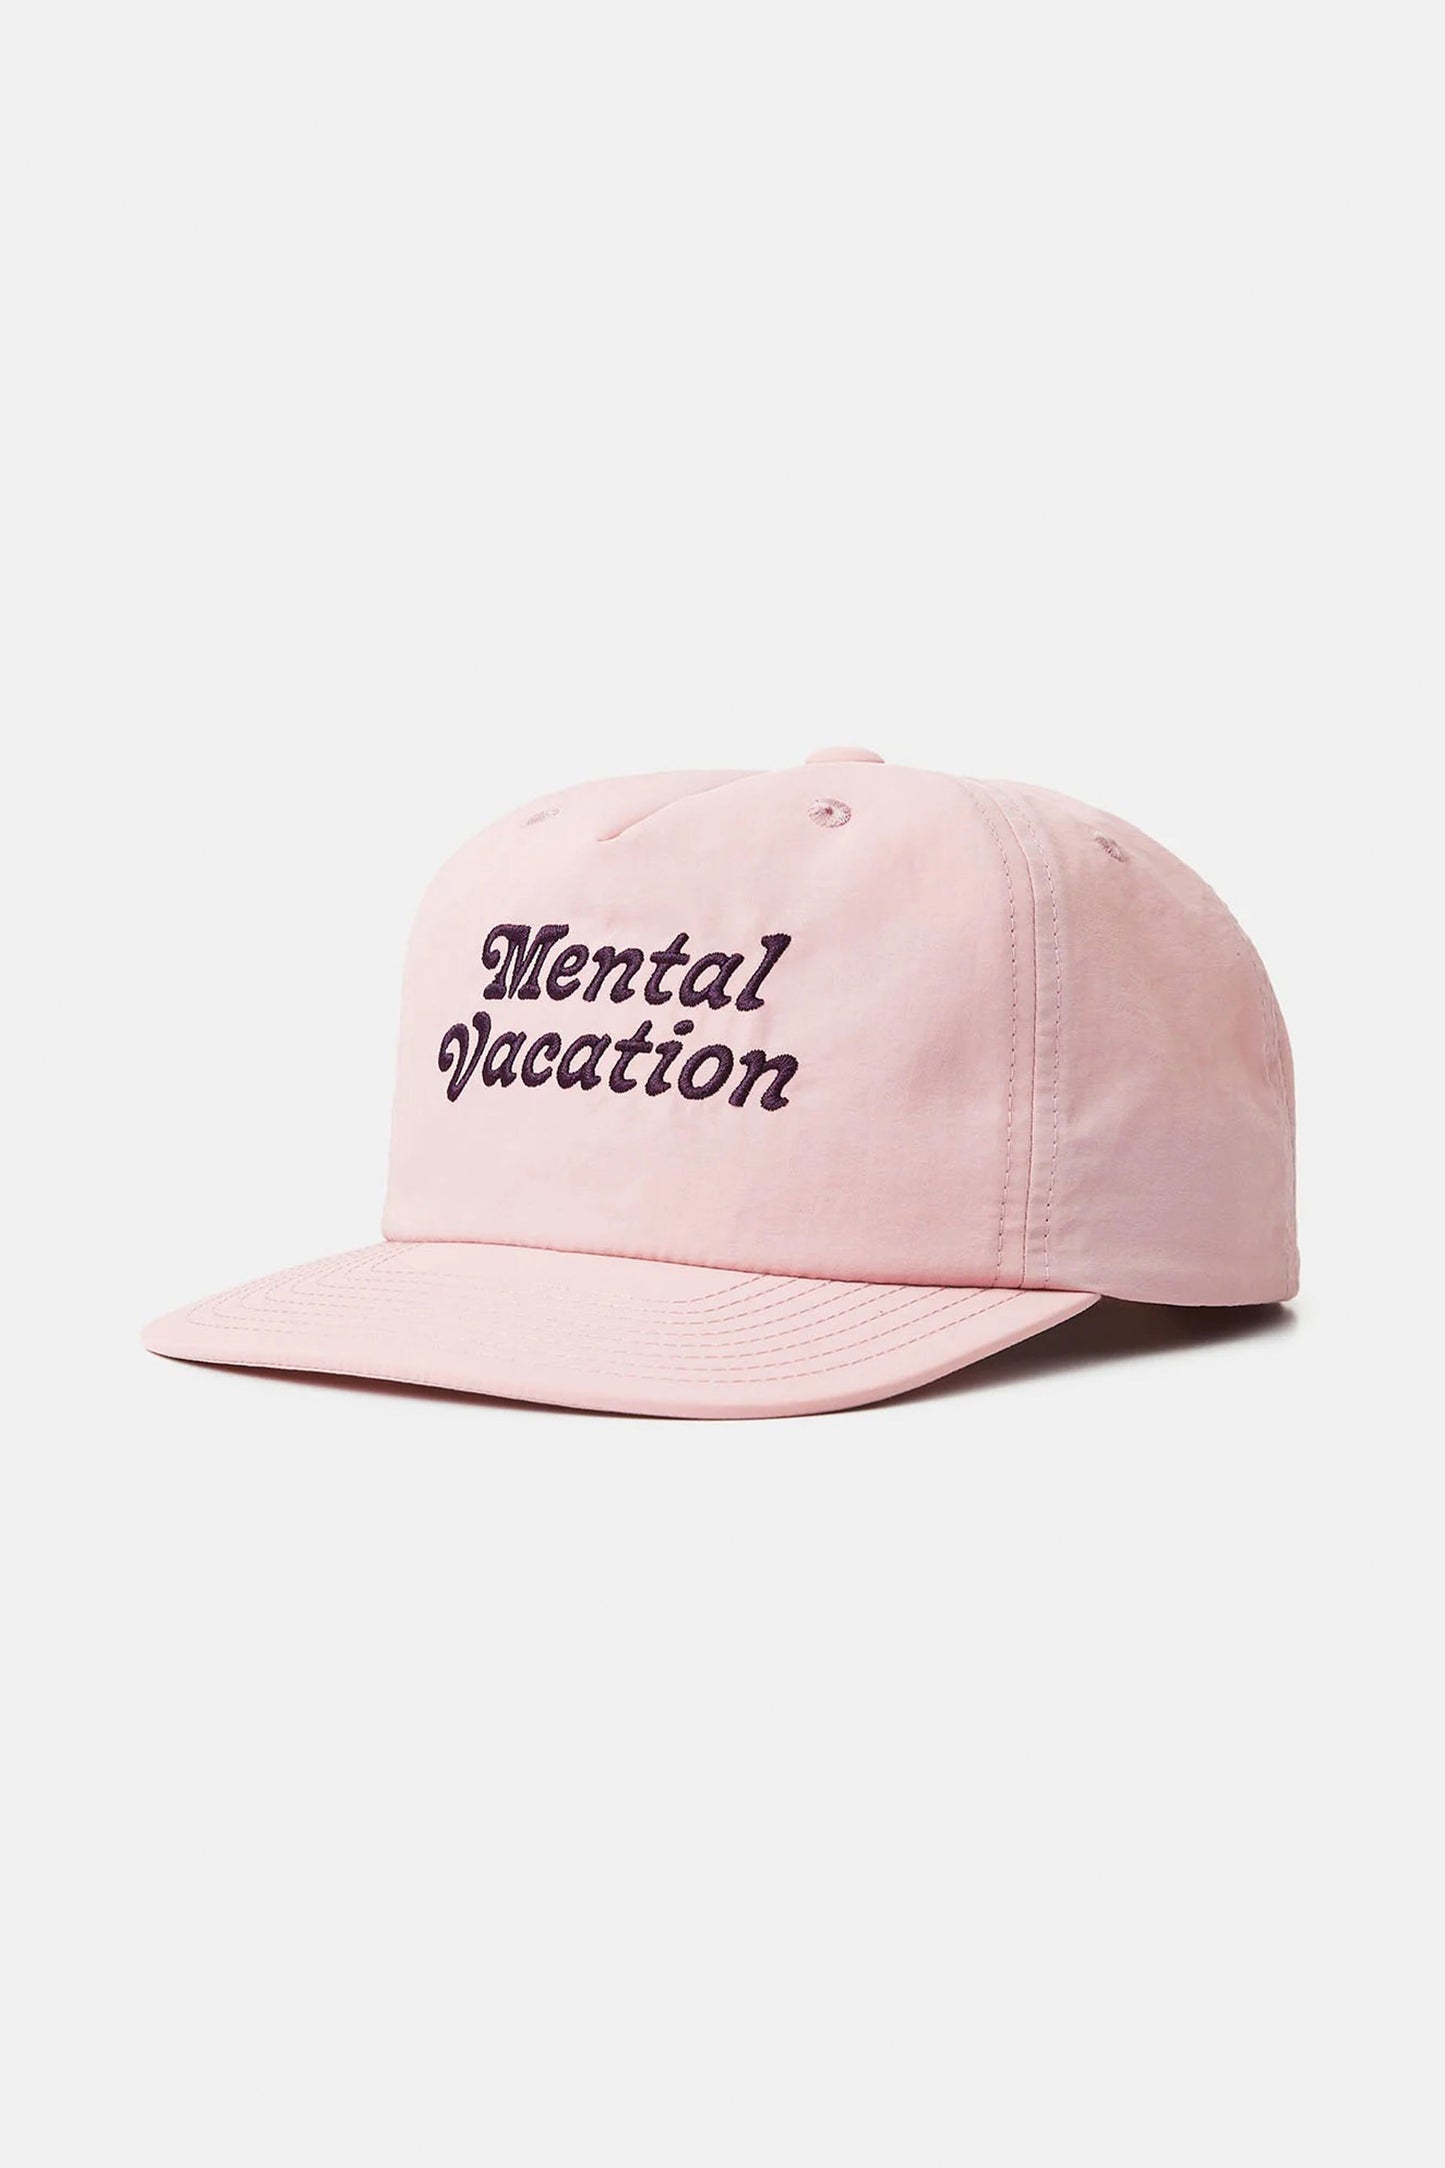    Pukas-Surf-Shop-Katin-Hat-Mental-Vacation-Pink